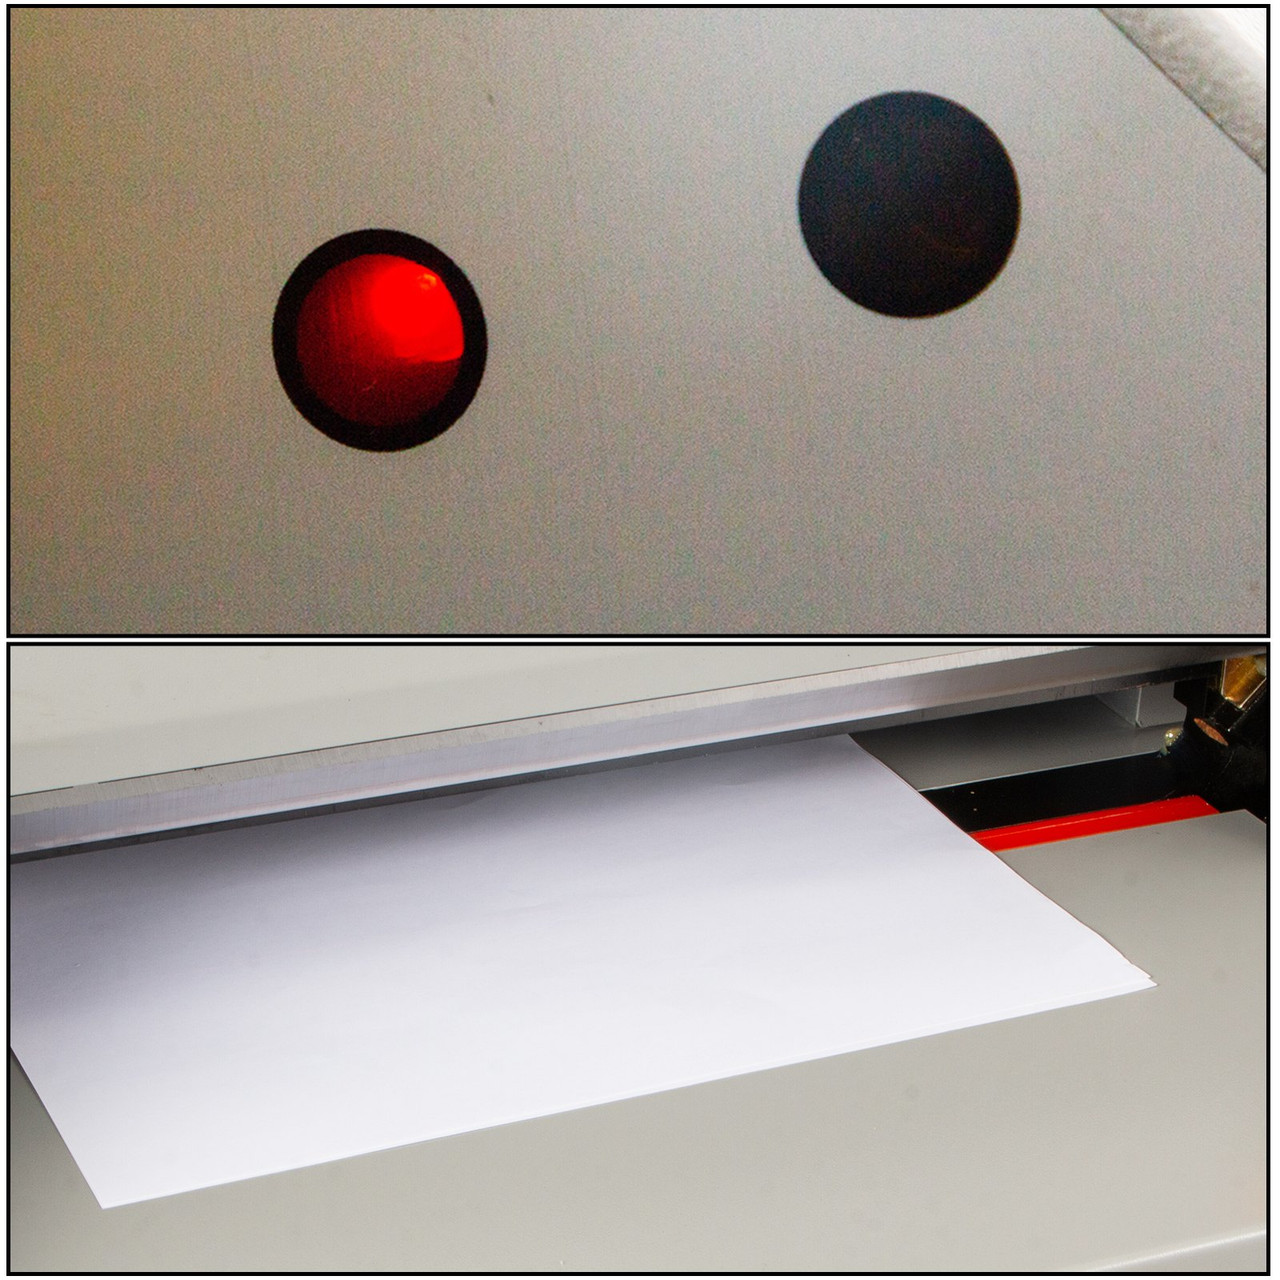 Electric Paper Cutter 450mm 17.7 Inch Paper Cutter Guillotine Numerical Control Automatic Digital